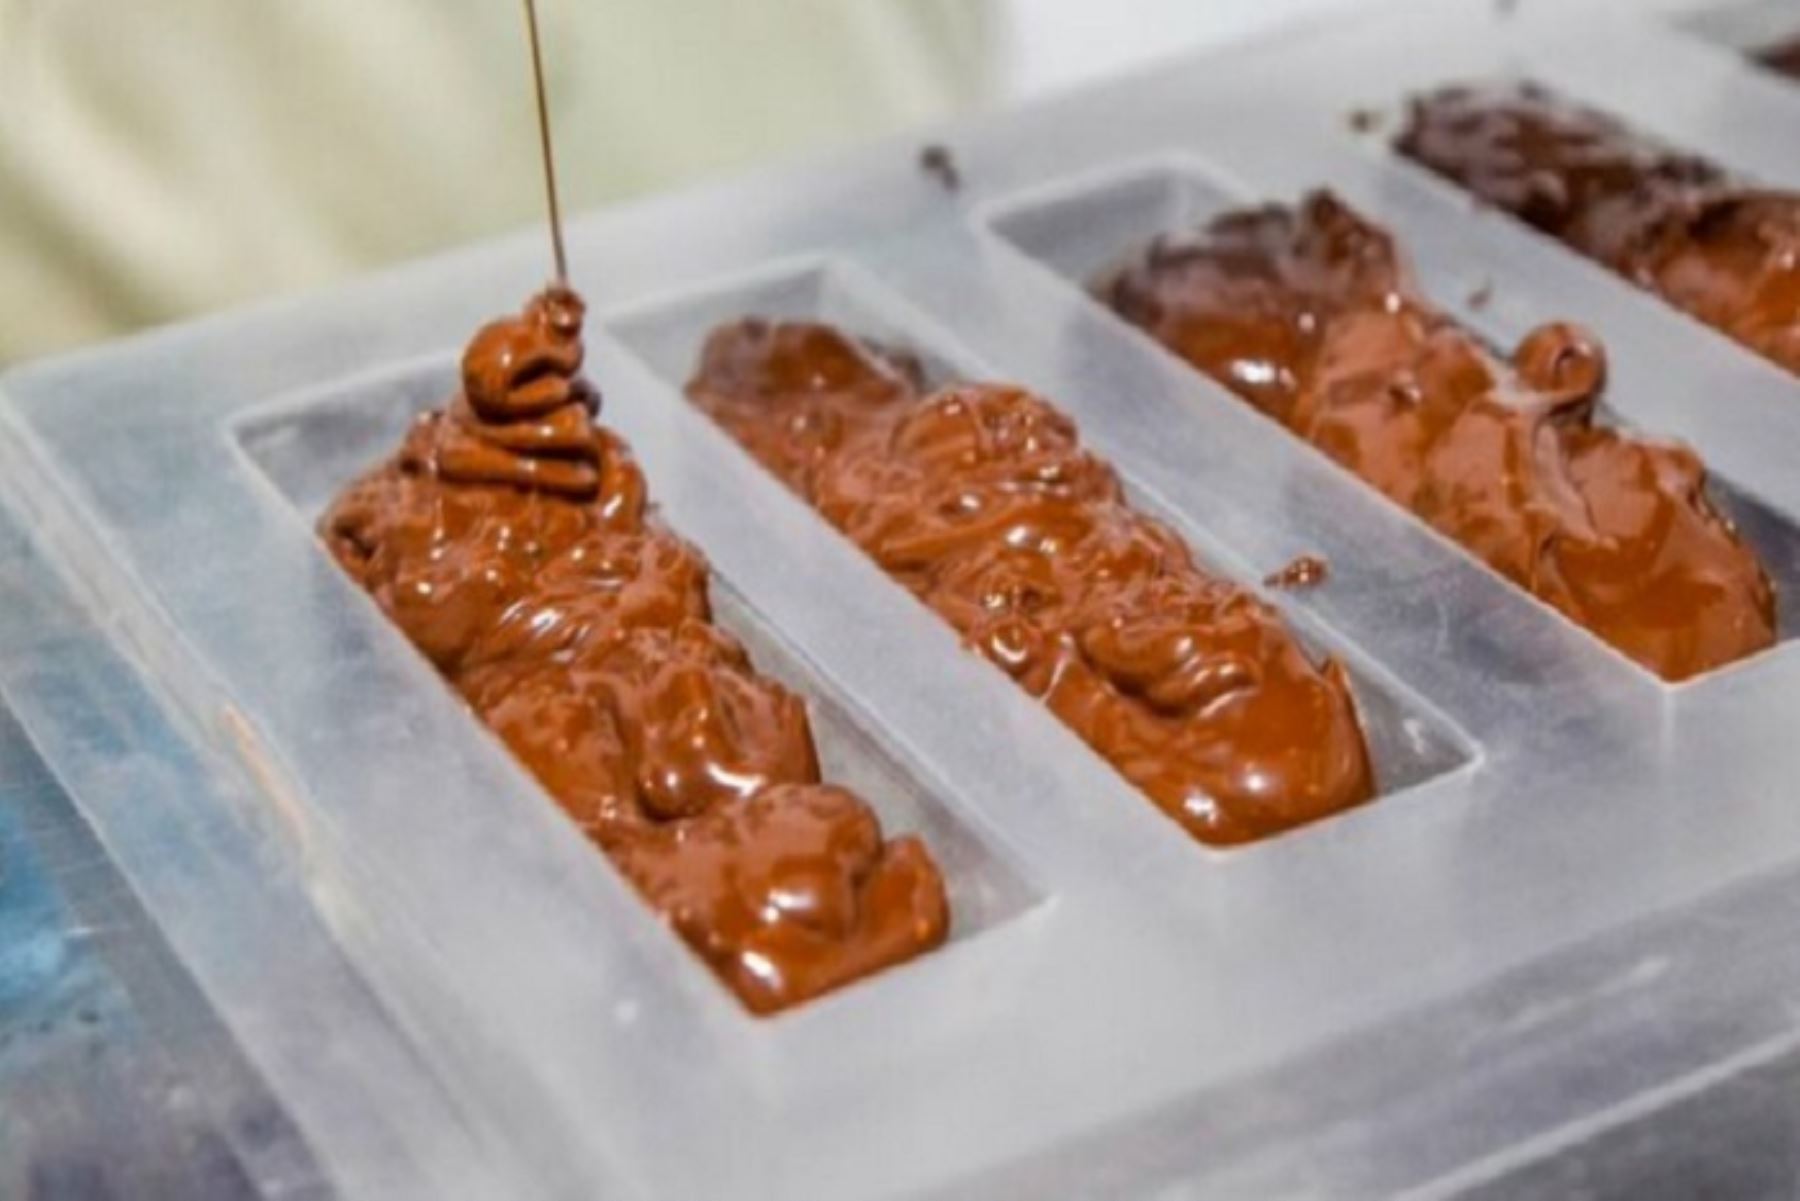 La espirulina, microalga que contiene las vitaminas B1, B2 y B6, es usada en la elaboración de innovadores y deliciosos chocolates. Foto: ANDINA/Difusión